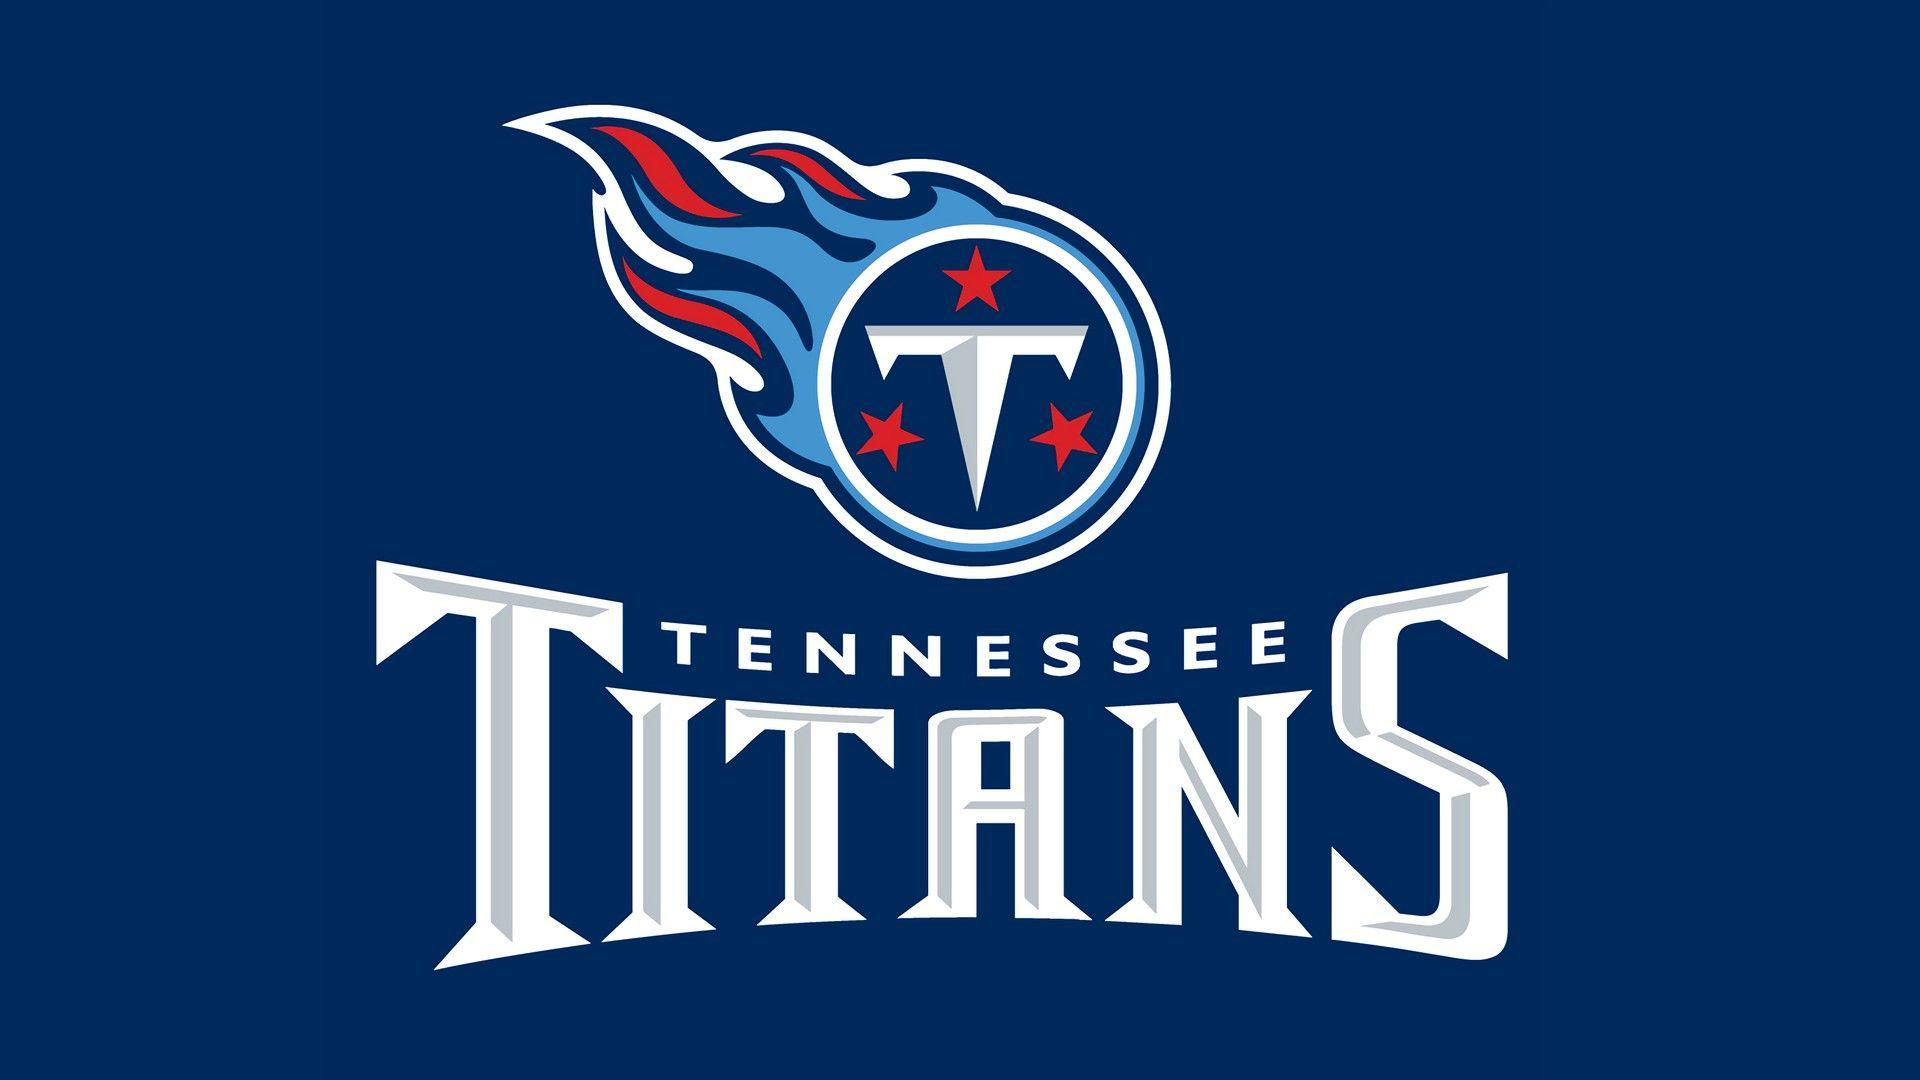 Tennessee Titans Wallpaper HD NFL Football Wallpaper. Titans football, Tennessee titans logo, Tennessee titans football